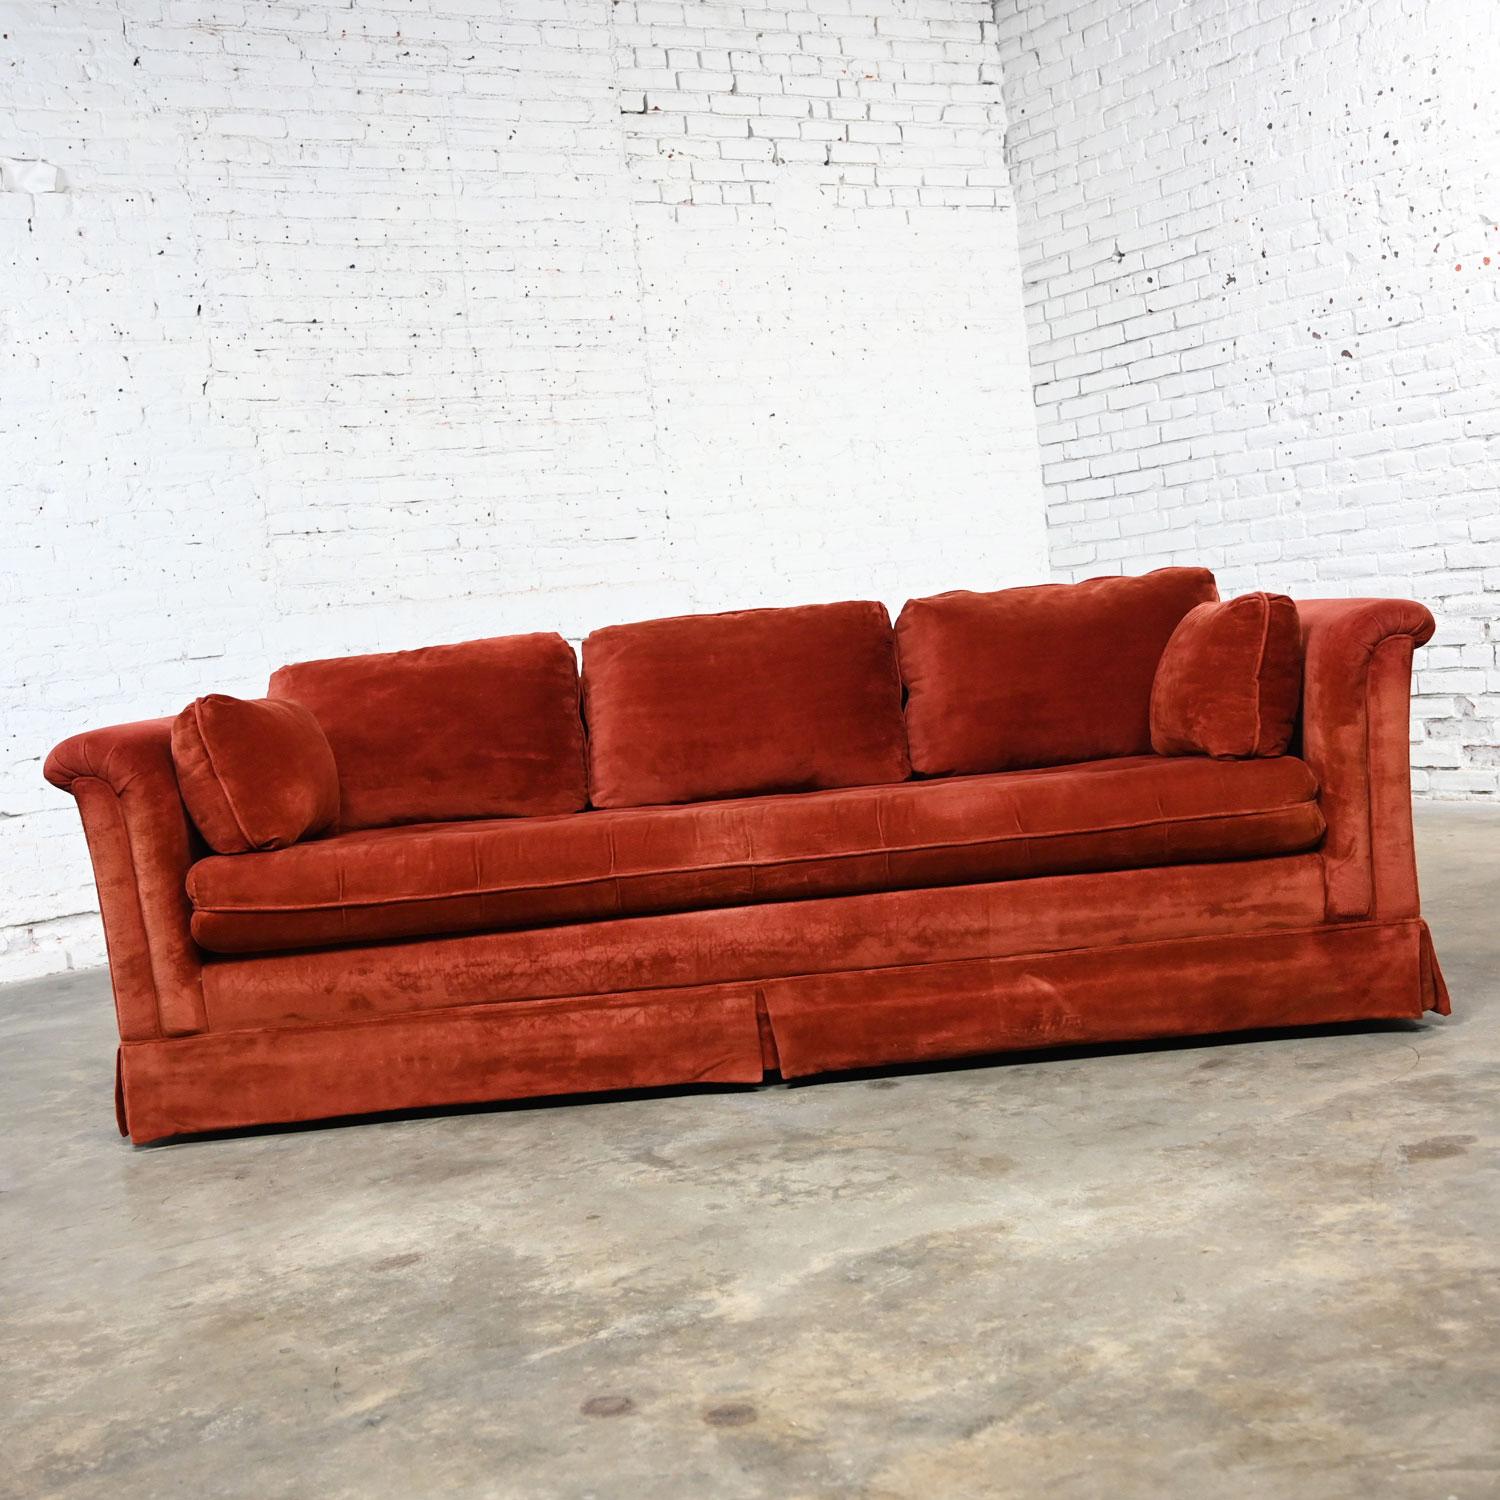 70s orange couch